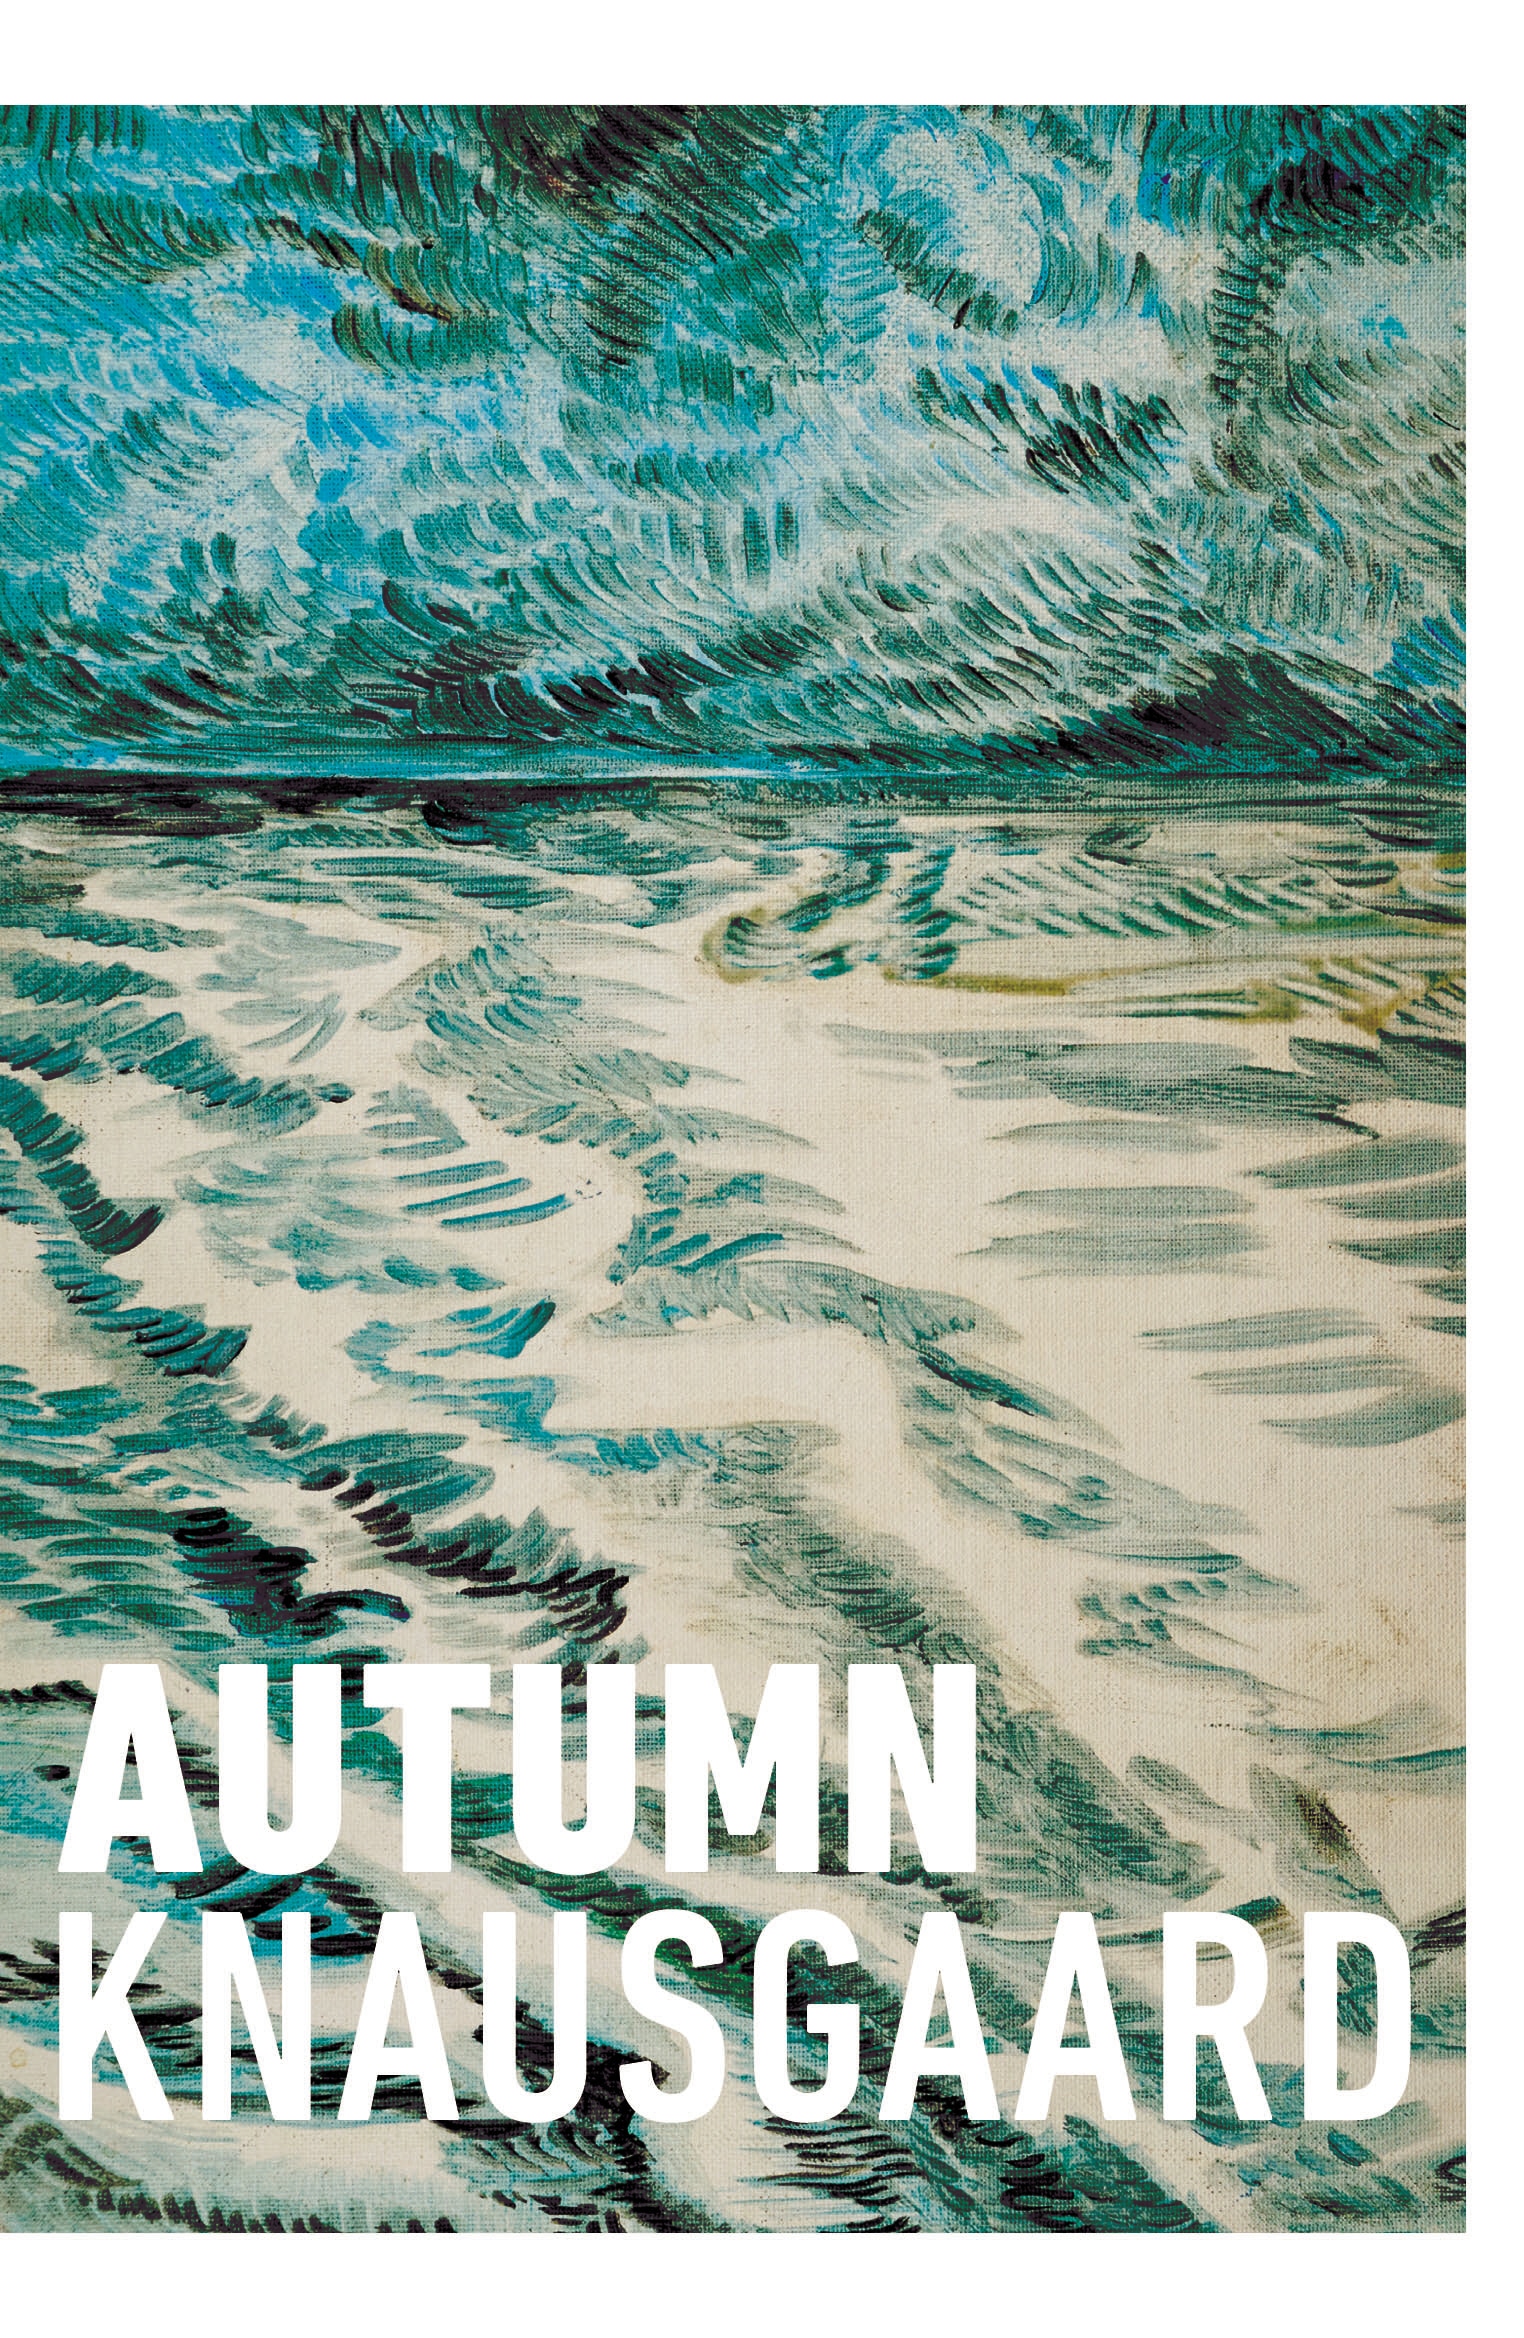 Book “Autumn” by Karl Ove Knausgaard — September 30, 2021